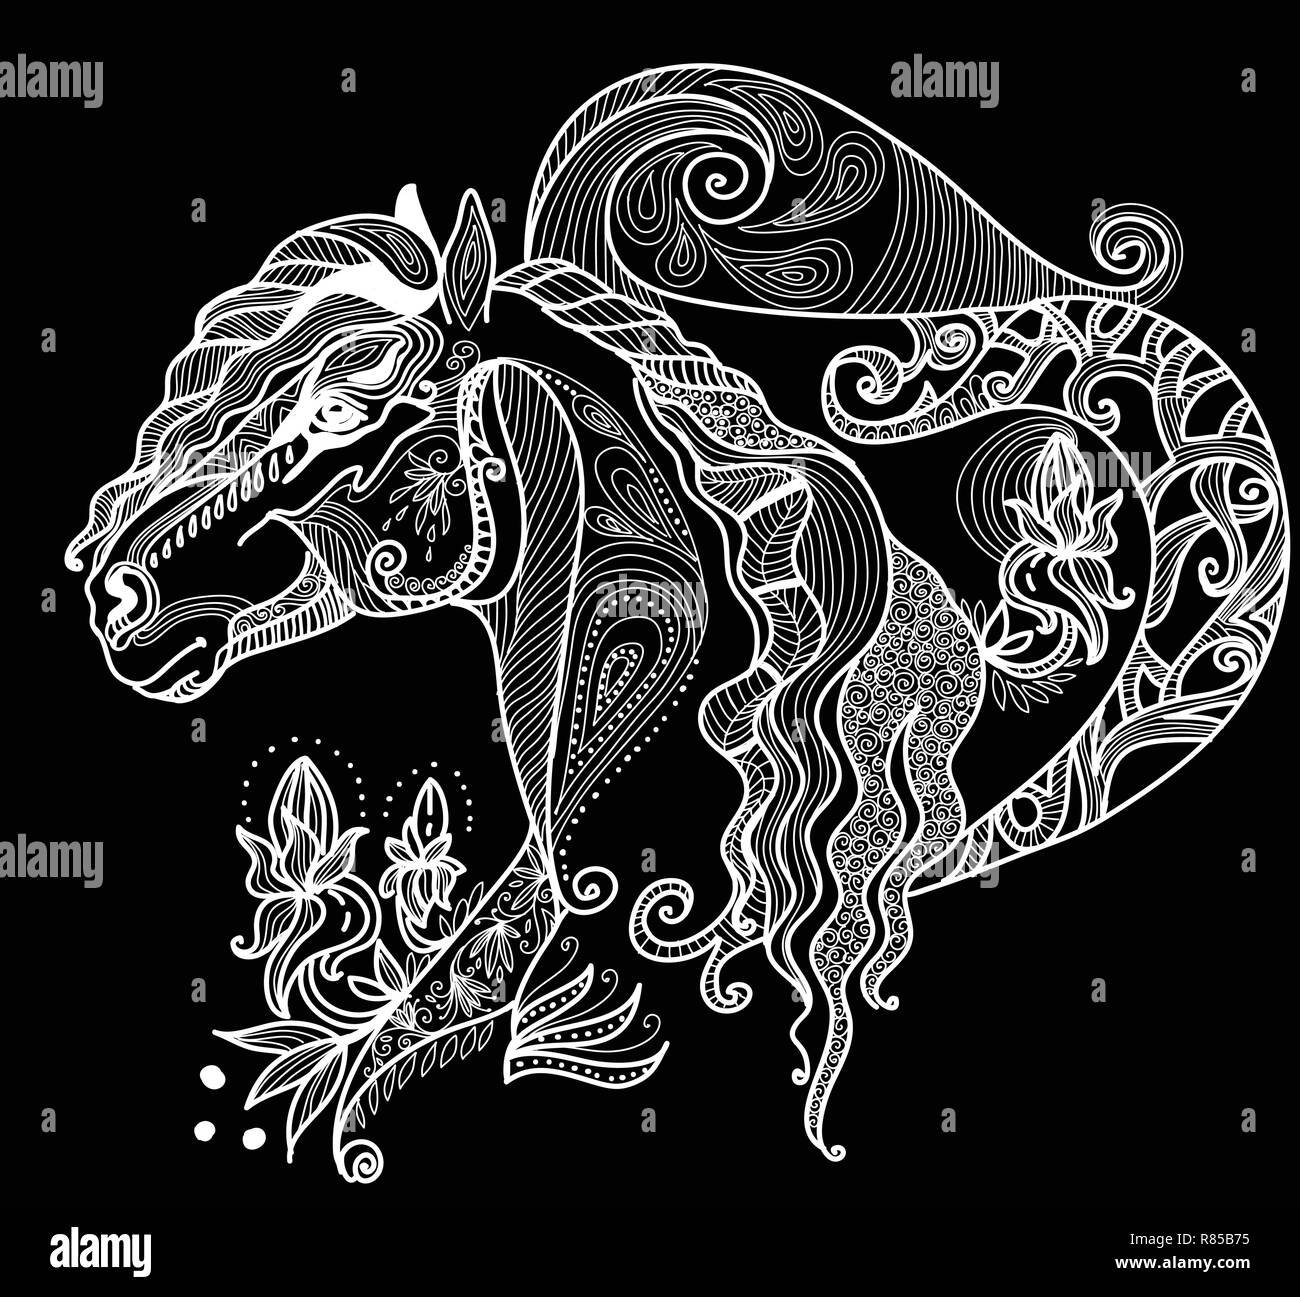 Vektor hand Zeichnung Abbildung zentangle Pferd in weißer Farbe auf schwarzem Hintergrund isoliert. Doodle Pferd Abbildung mit pflanzlichen Elementen. Farbgebung Stock Vektor